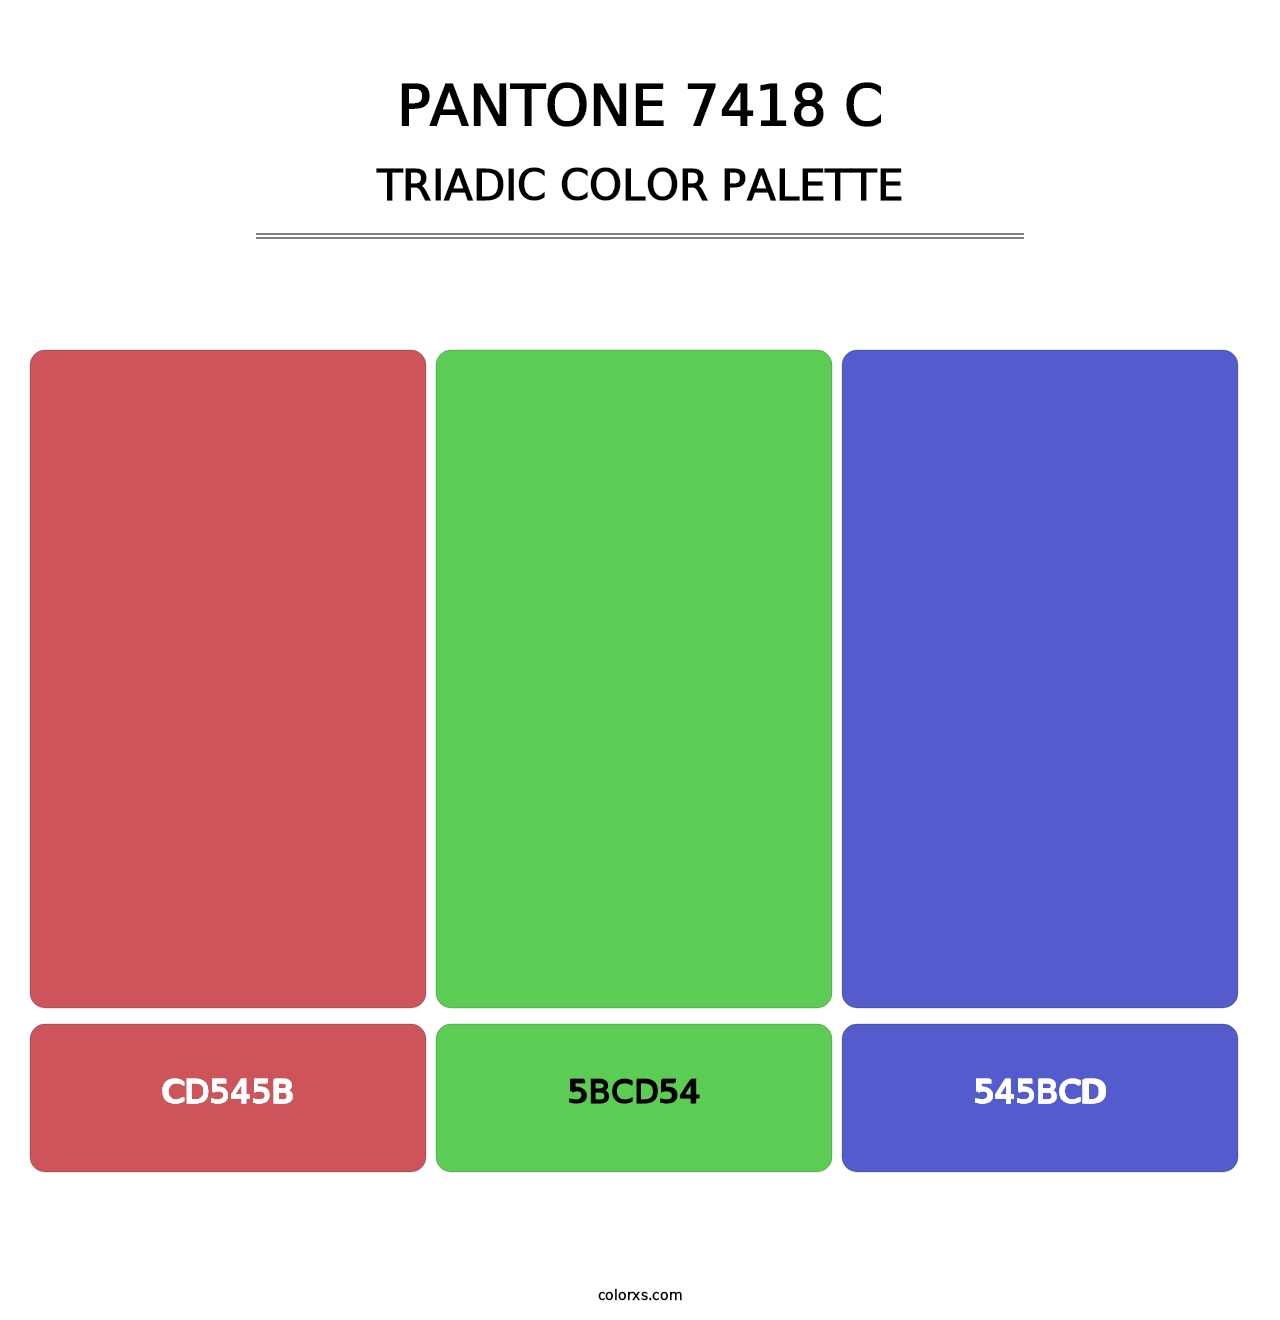 PANTONE 7418 C - Triadic Color Palette